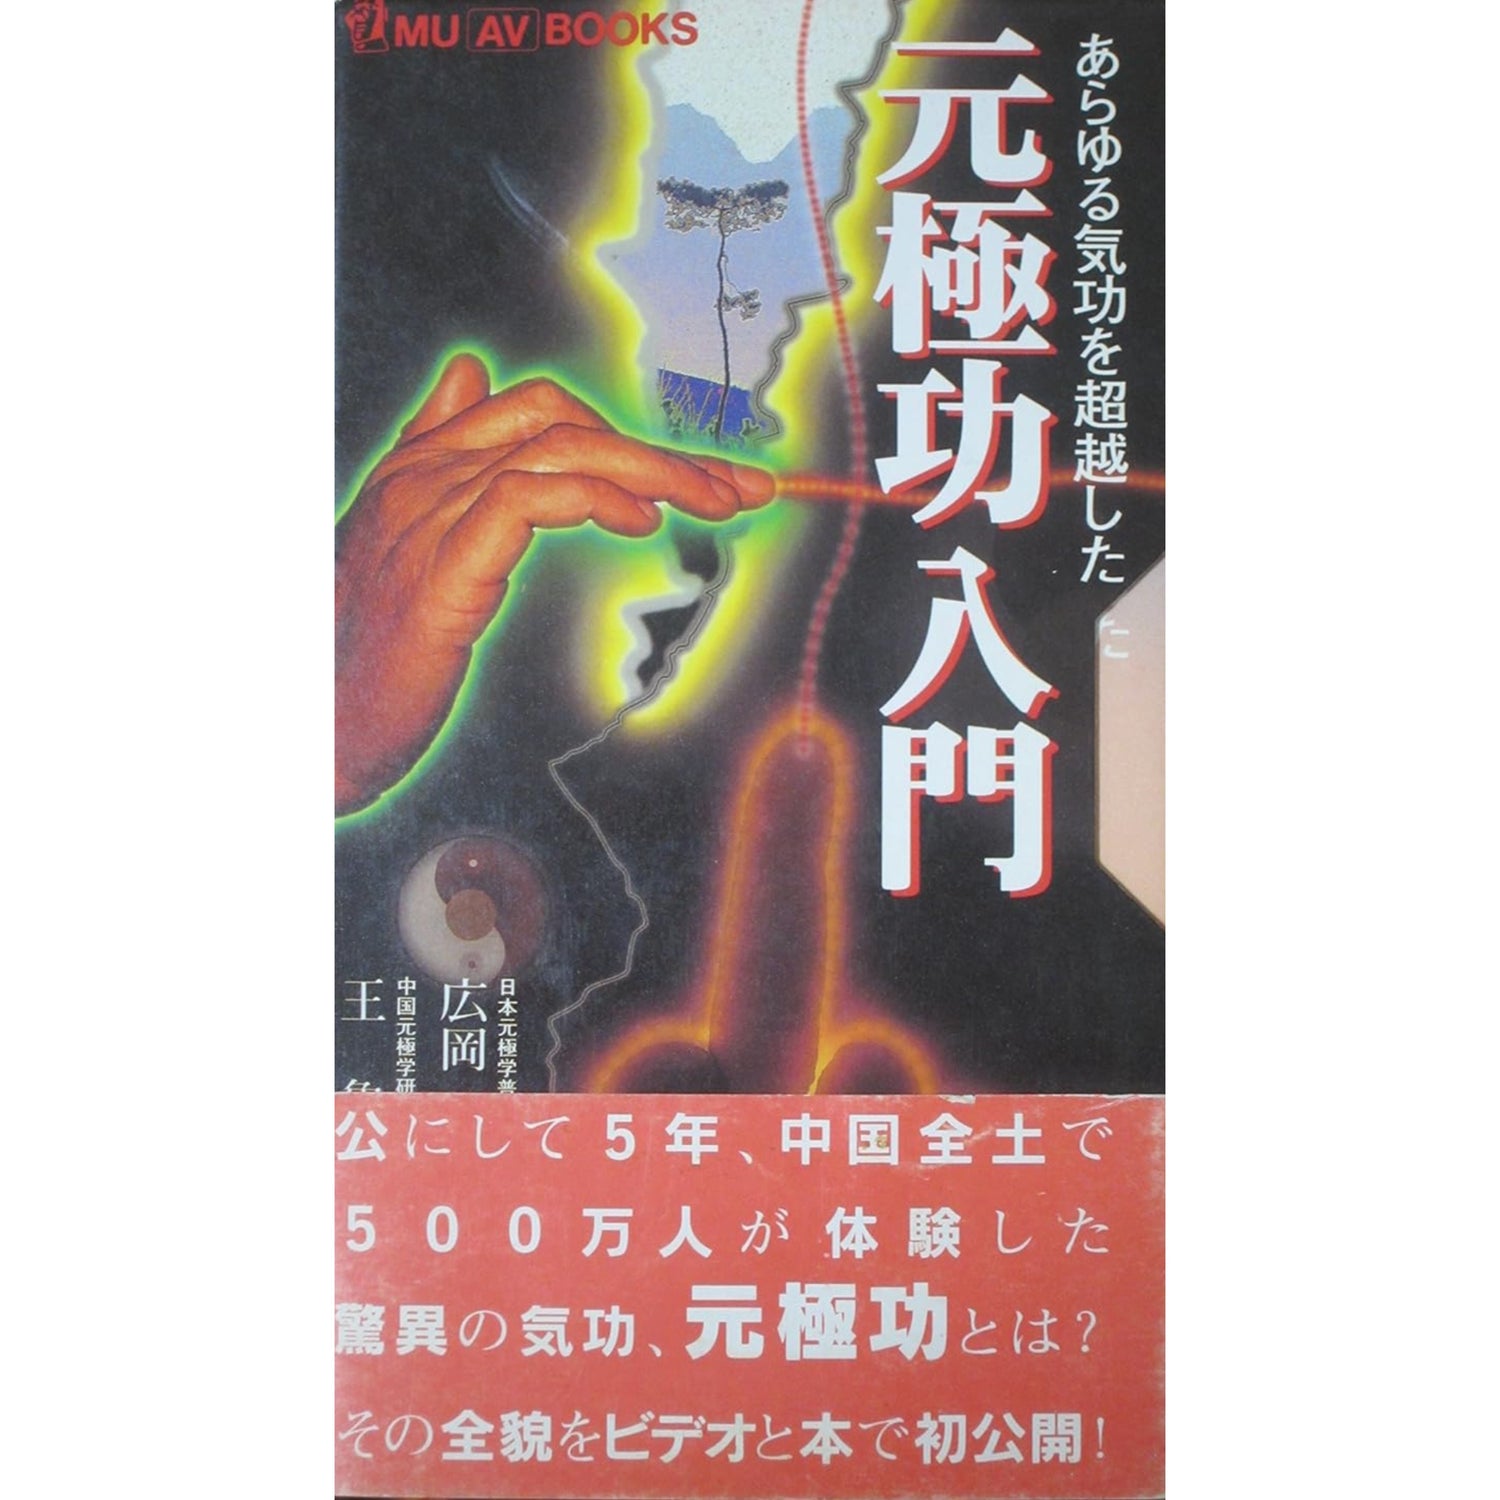 Yuan Qigong Book & VHS Set (Preowned)